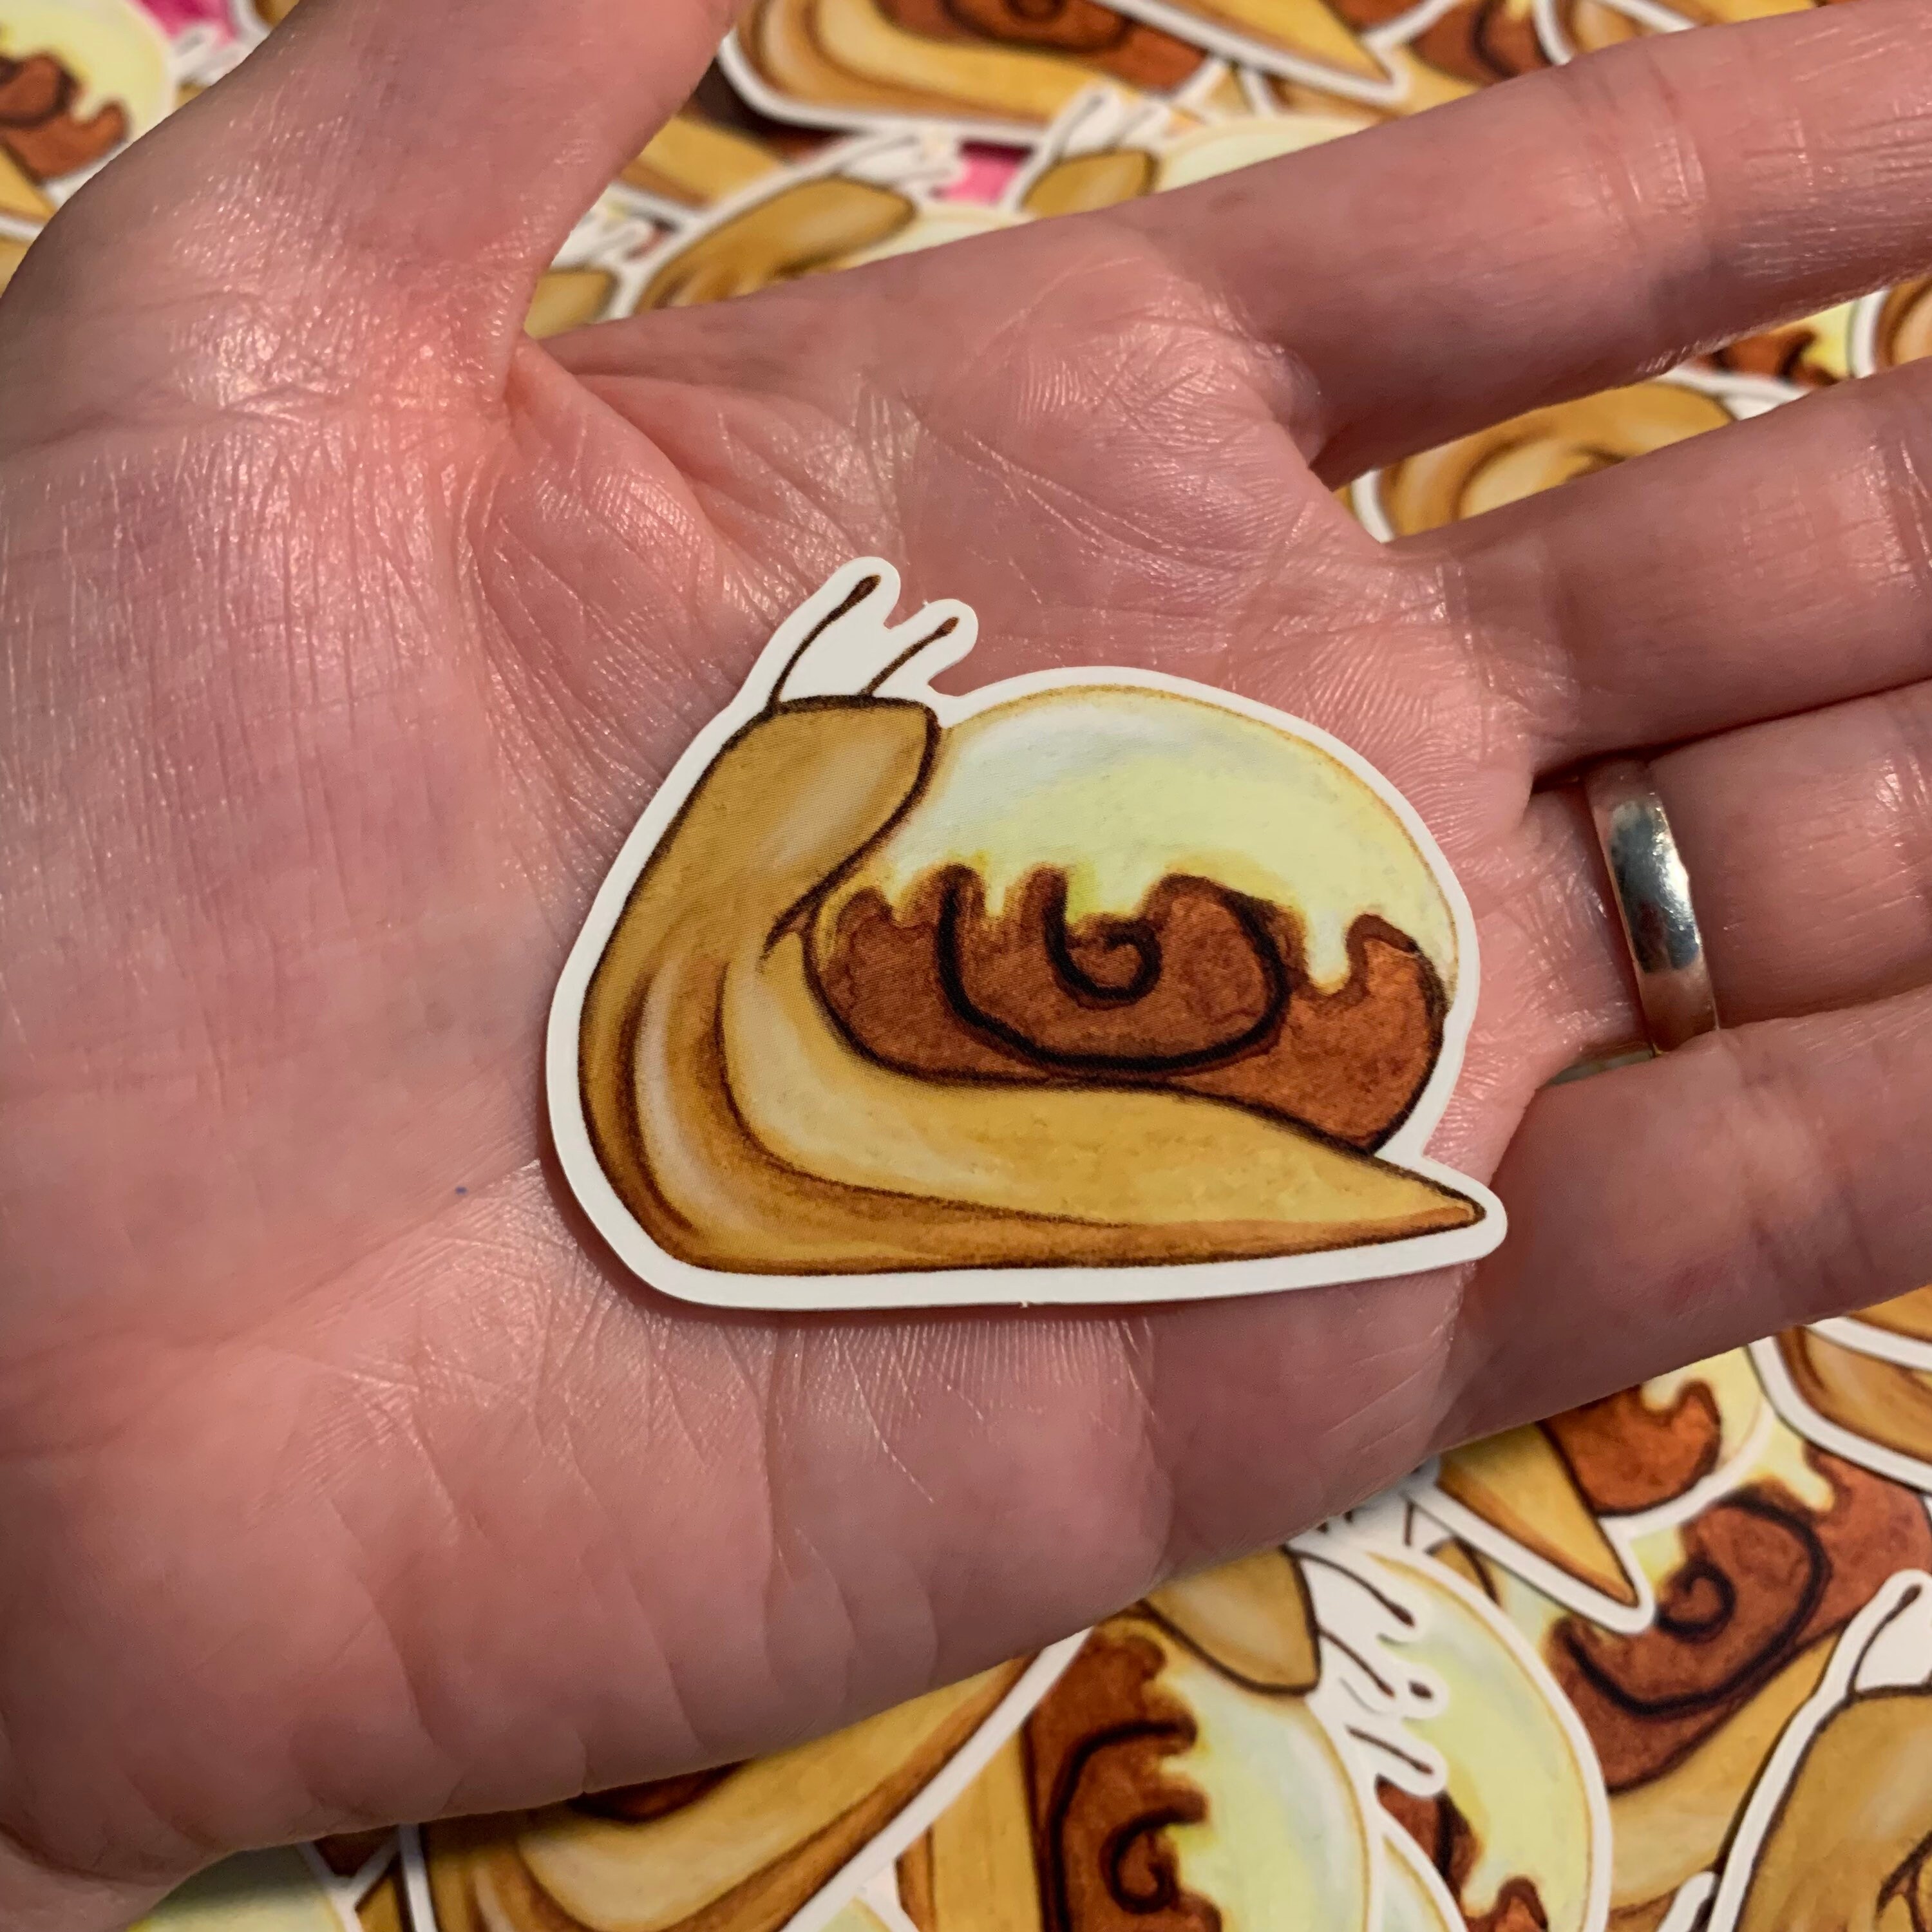 Sticker - Cinnamon Roll Snail – Mochiglow